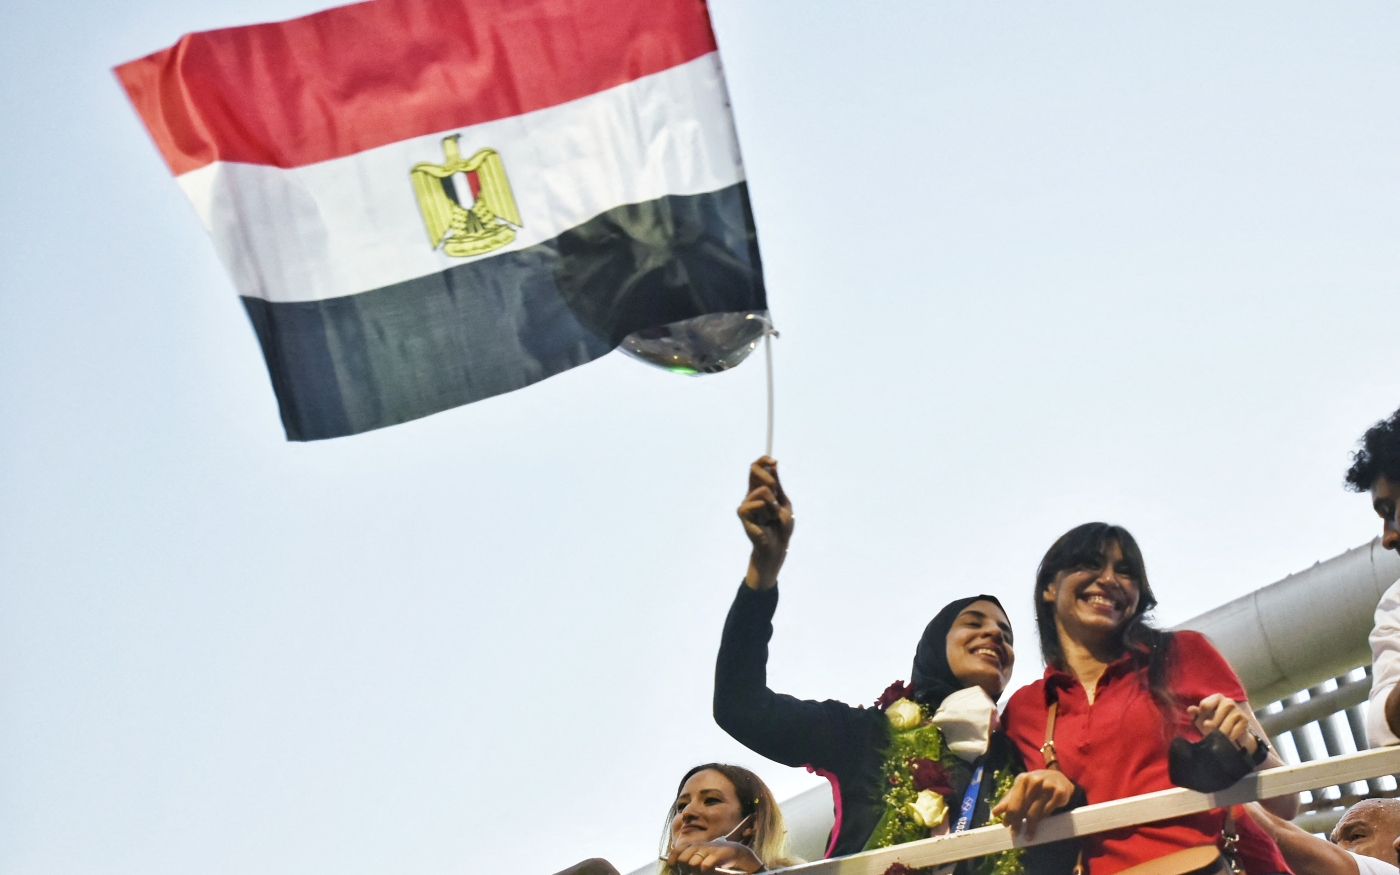 L’athlète Feryal Abdelaziz brandit le drapeau égyptien à l’aéroport du Caire après avoir remporté la médaille d’or dans l’épreuve féminine de kumite +61 kg aux JO de Tokyo (Reuters)